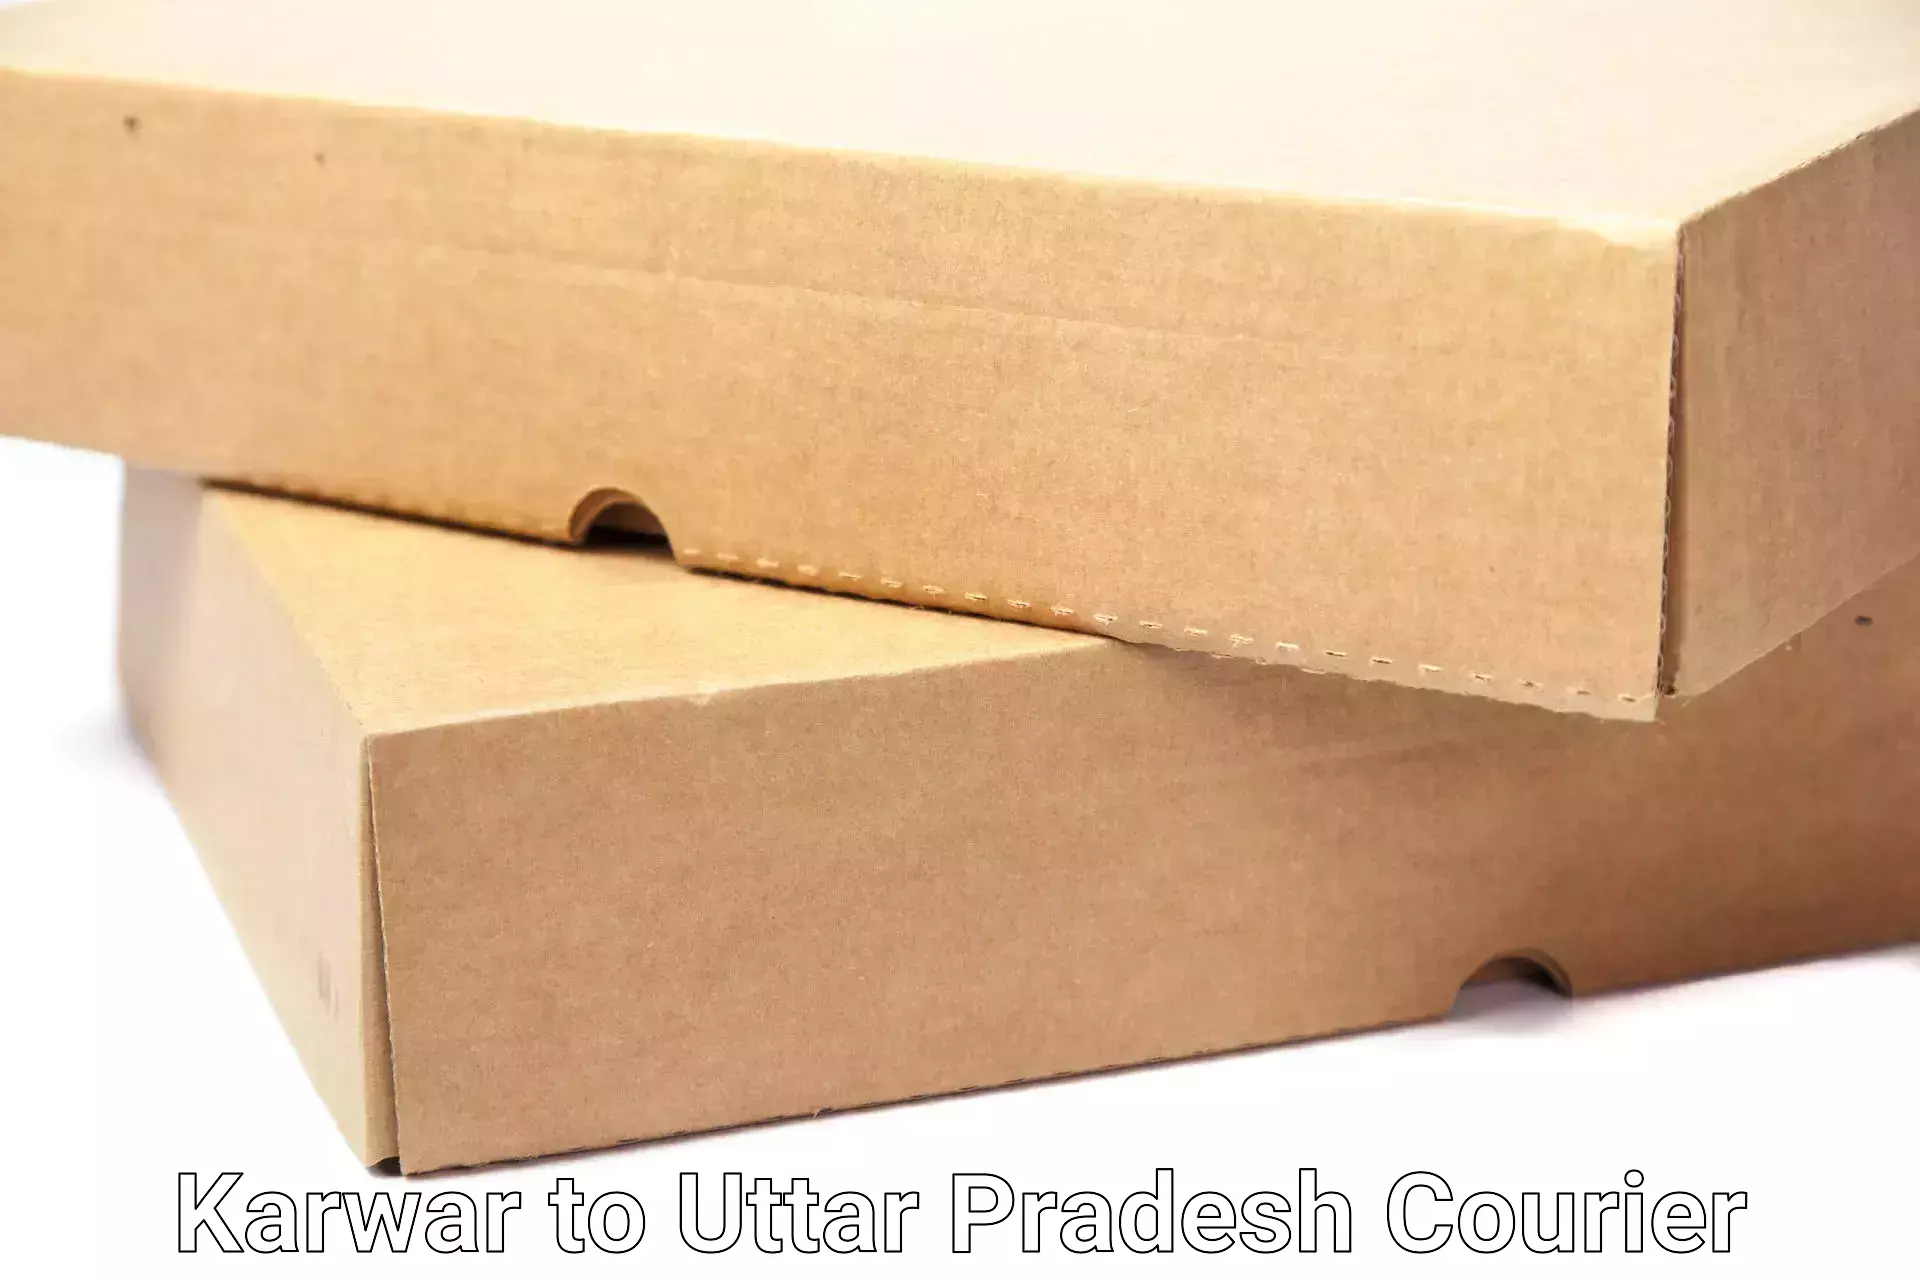 Full-service household moving Karwar to Uttar Pradesh